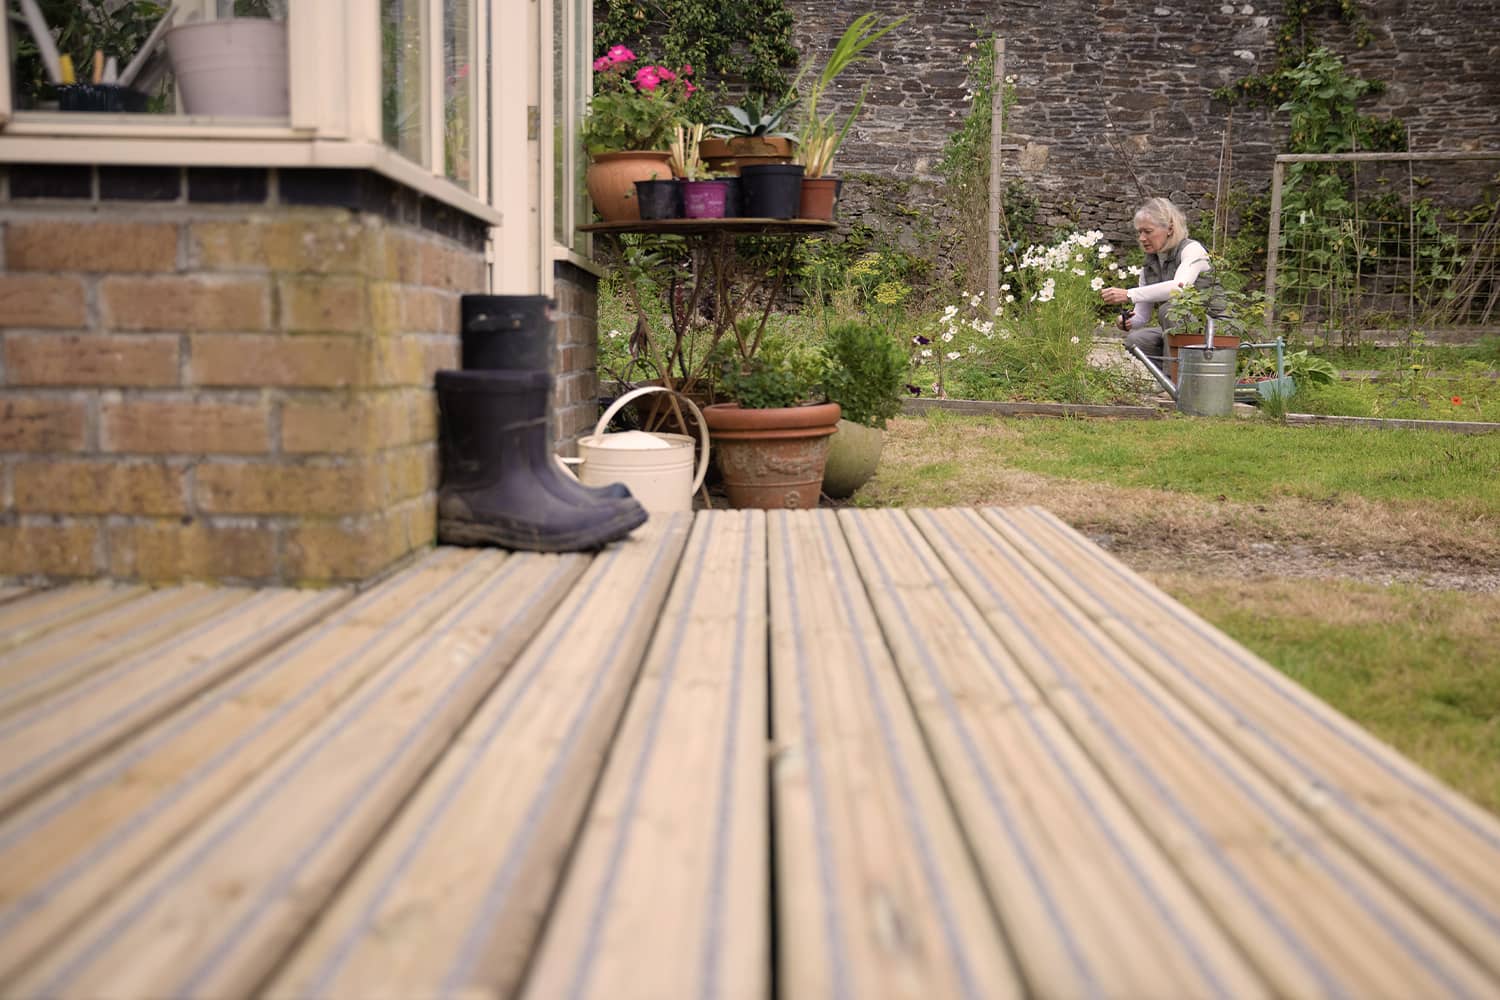 Woman gardening near summerhouse with Gripsure non-slip decking